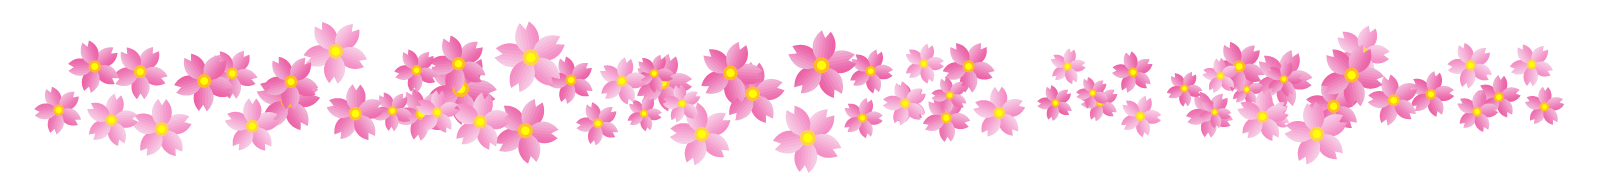 美しい花の画像 綺麗なイラスト 無料 春 ライン